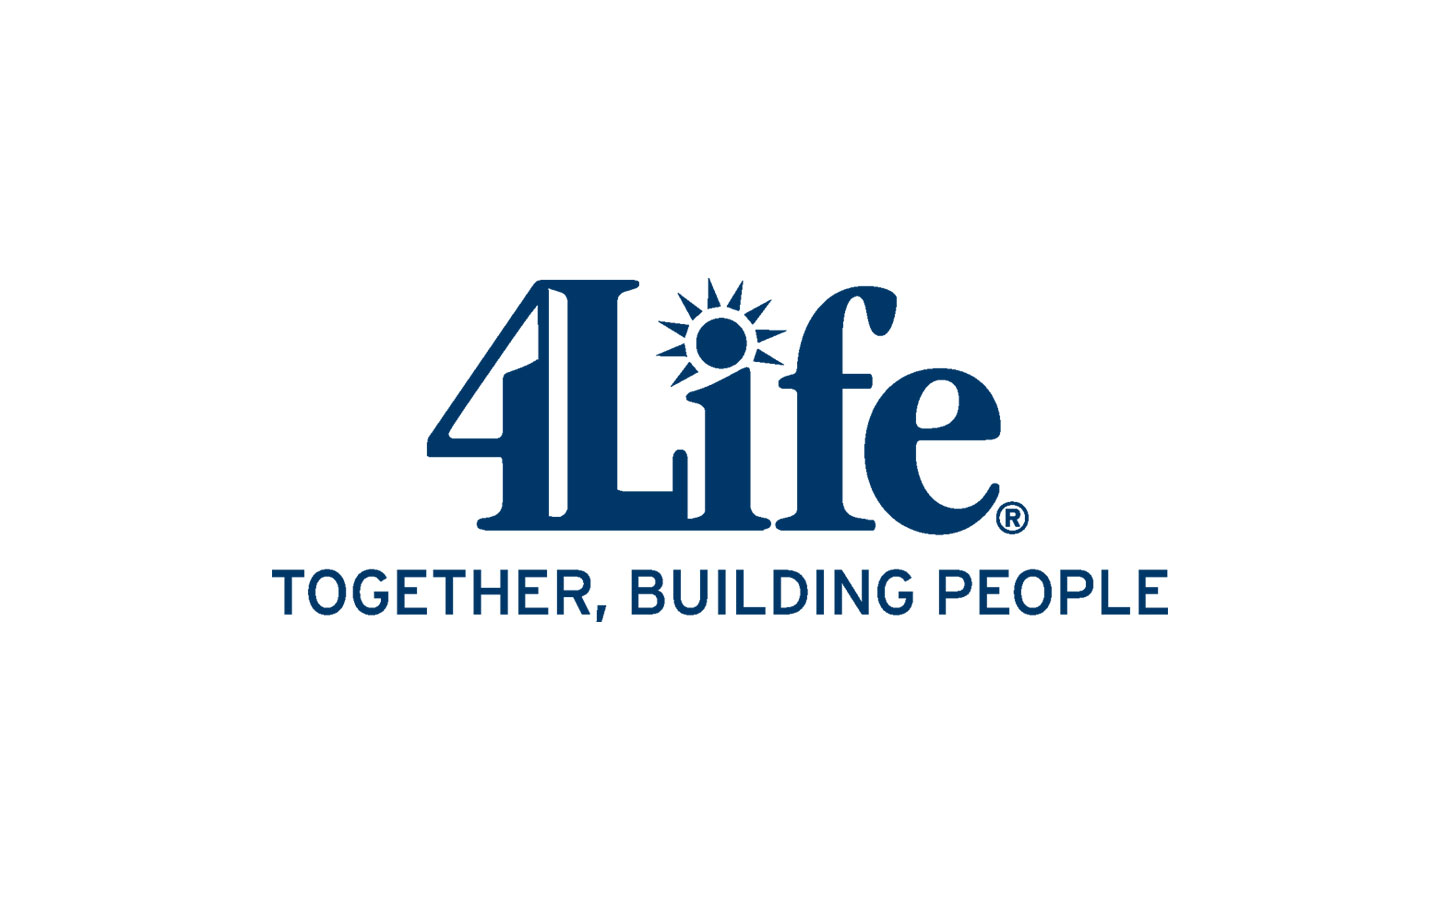 Https 4 life. 4life. 4life research. 4life research логотип. Бизнес 4life сетевой.